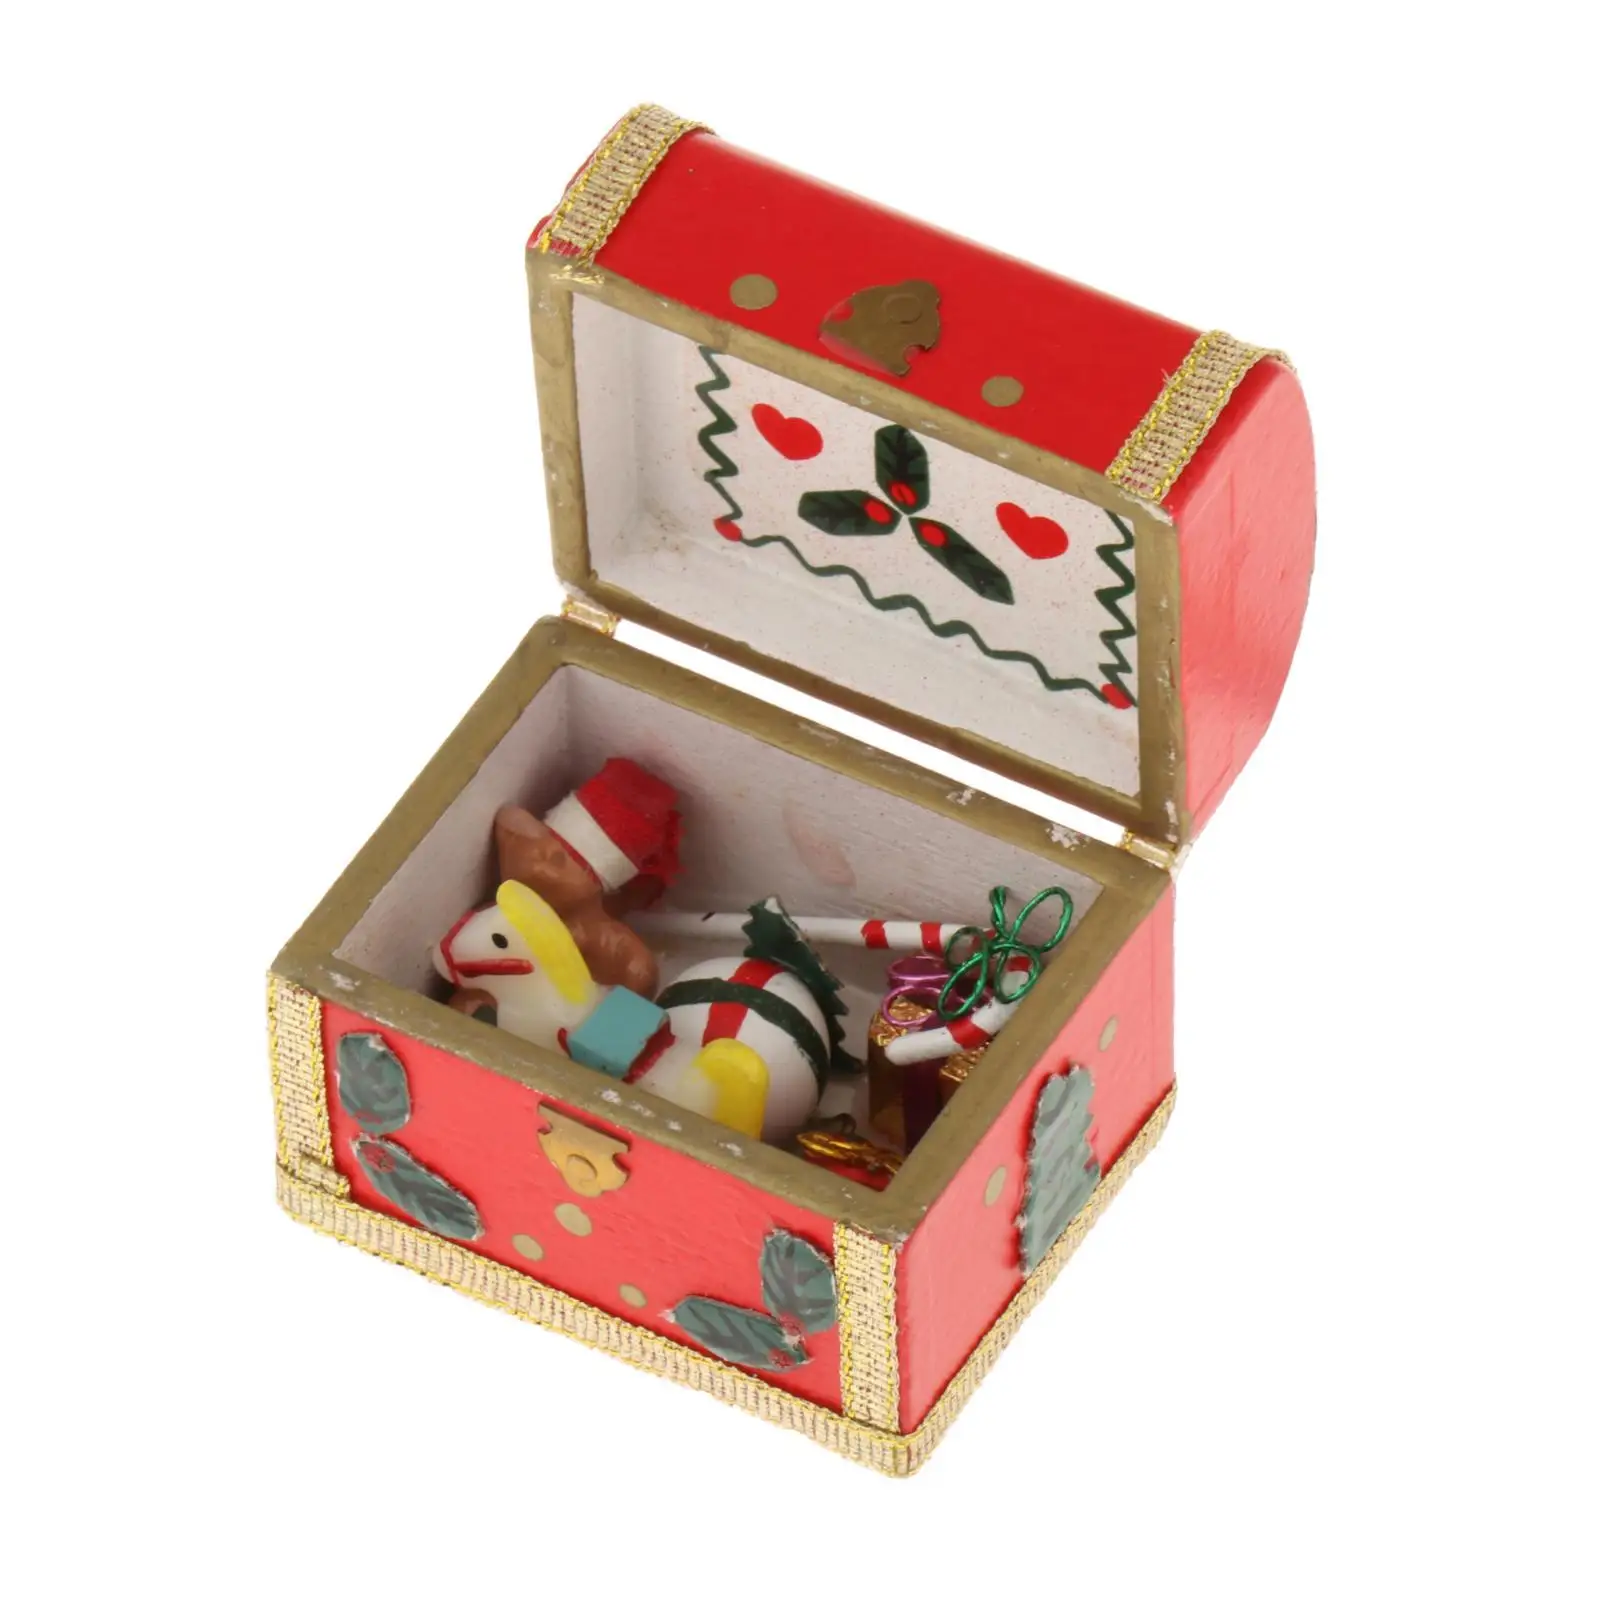 Christmas 1:12 Scale Miniature Treasure Chest Dollhouse Accessories for Scene Dollhouse Micro Landscape Accessory Ornaments